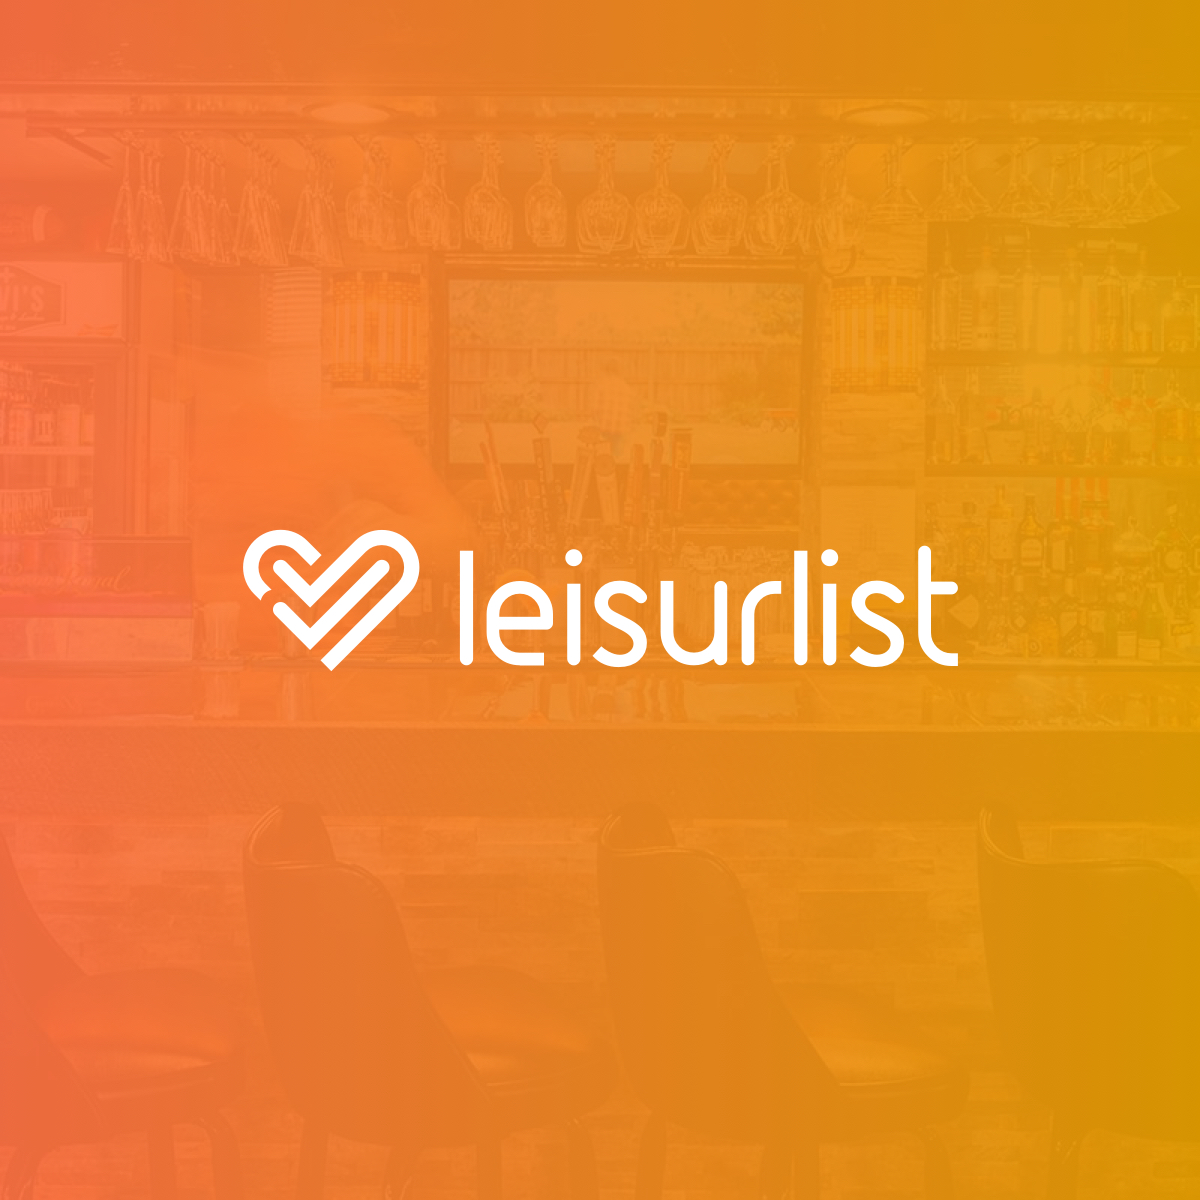 leisurlist logo with background